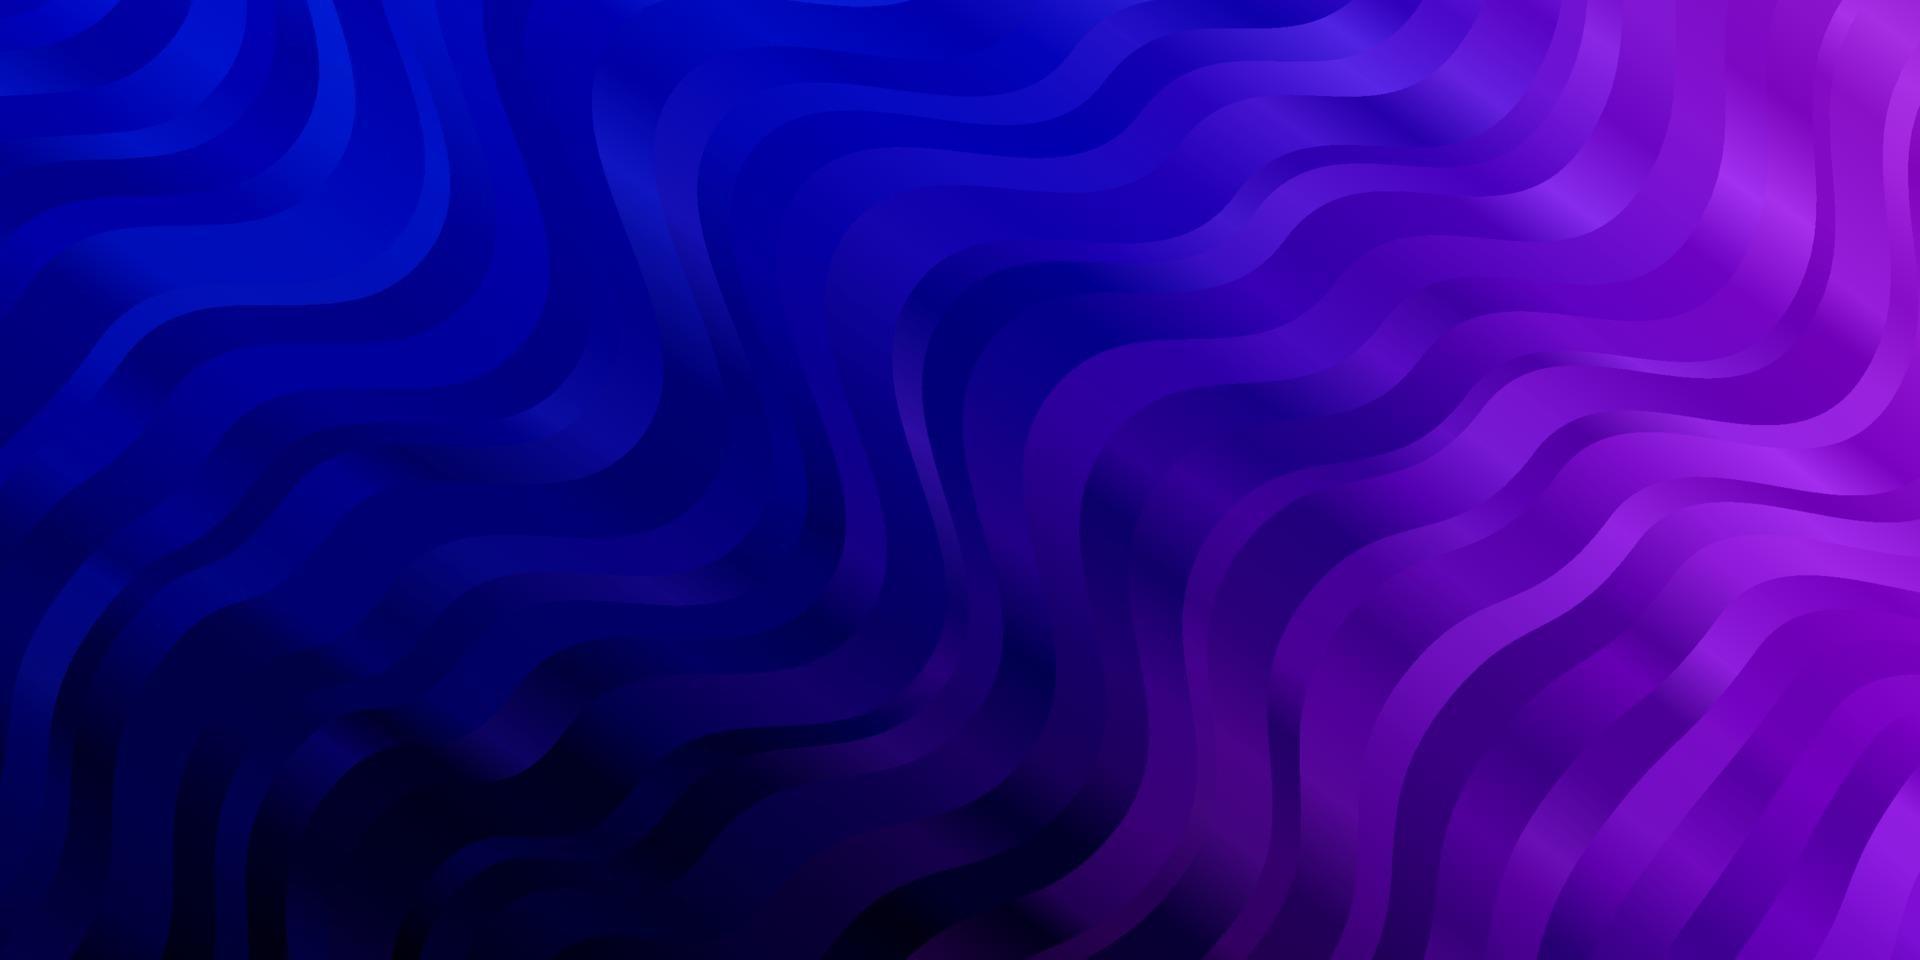 ljusrosa, blå vektormall med böjda linjer. vektor